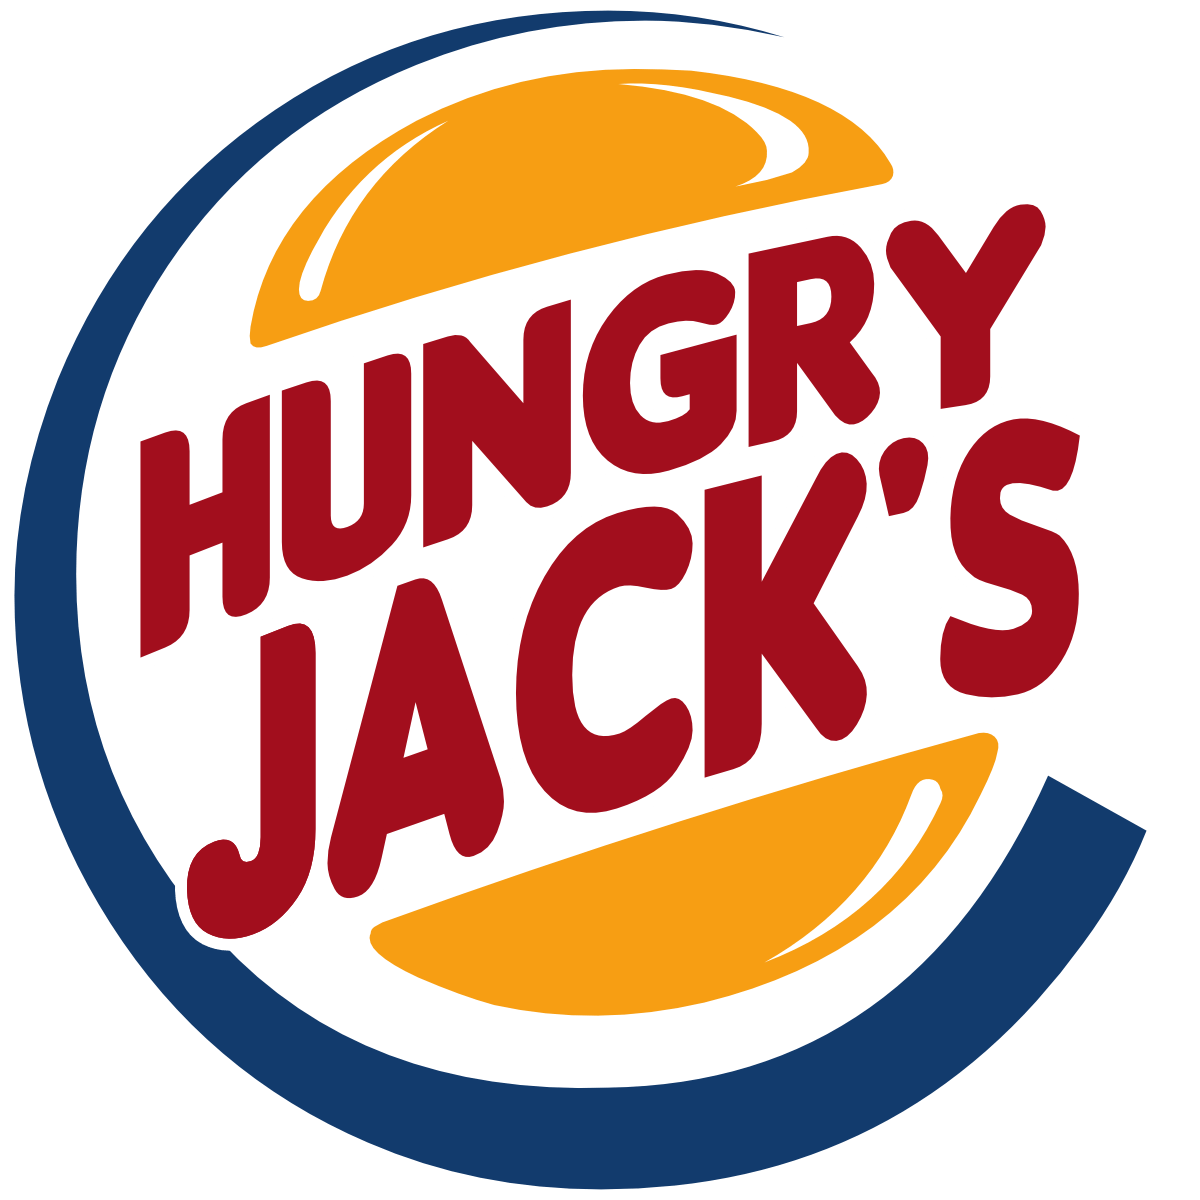 Orange Jack Logo - Hungry Jacks logo (1999-like) by DecaTilde on DeviantArt